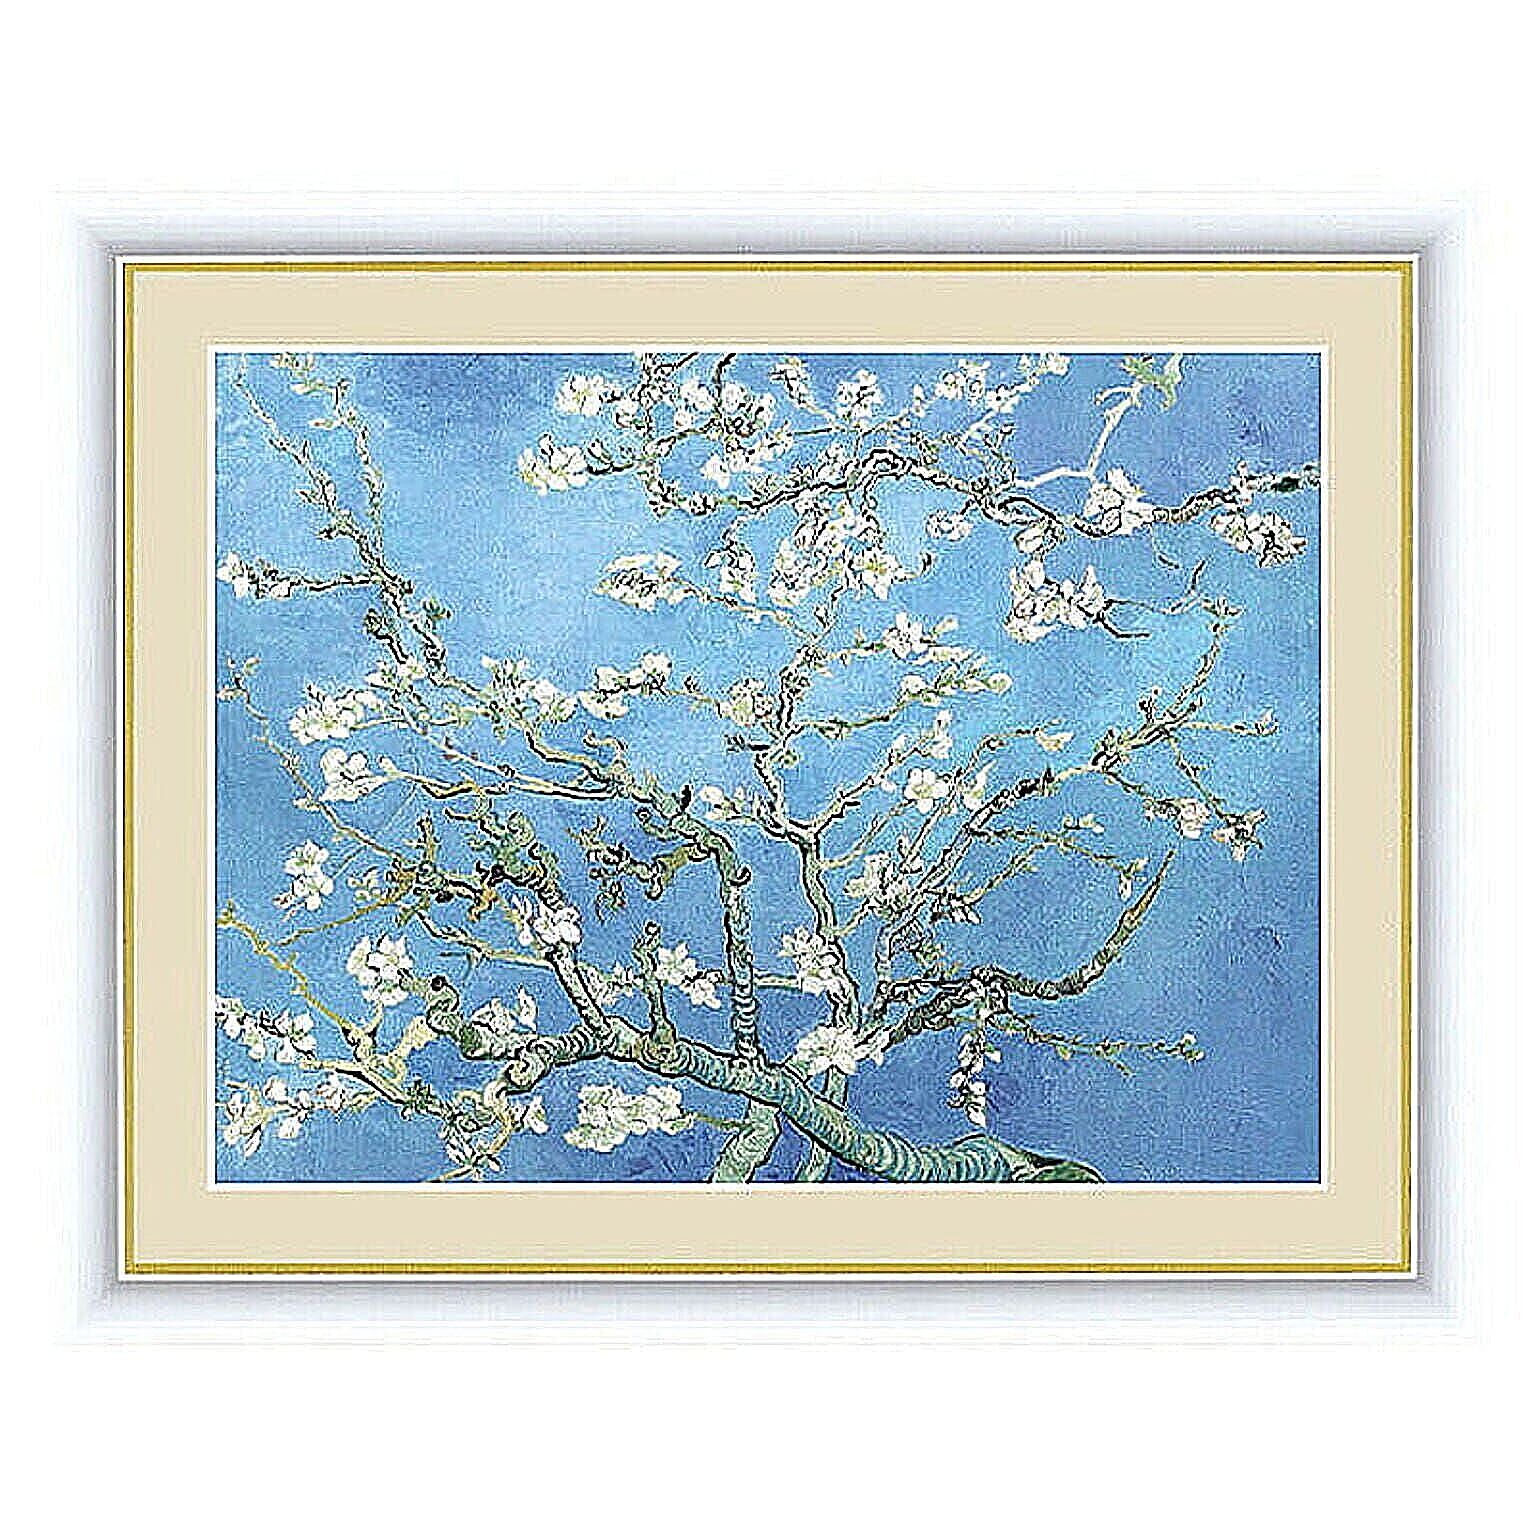 アート 額絵 花咲くアーモンドの木の枝 ゴッホ 本紙サイズ F4(約31x23cm) 額サイズ 42x34cm 三幸